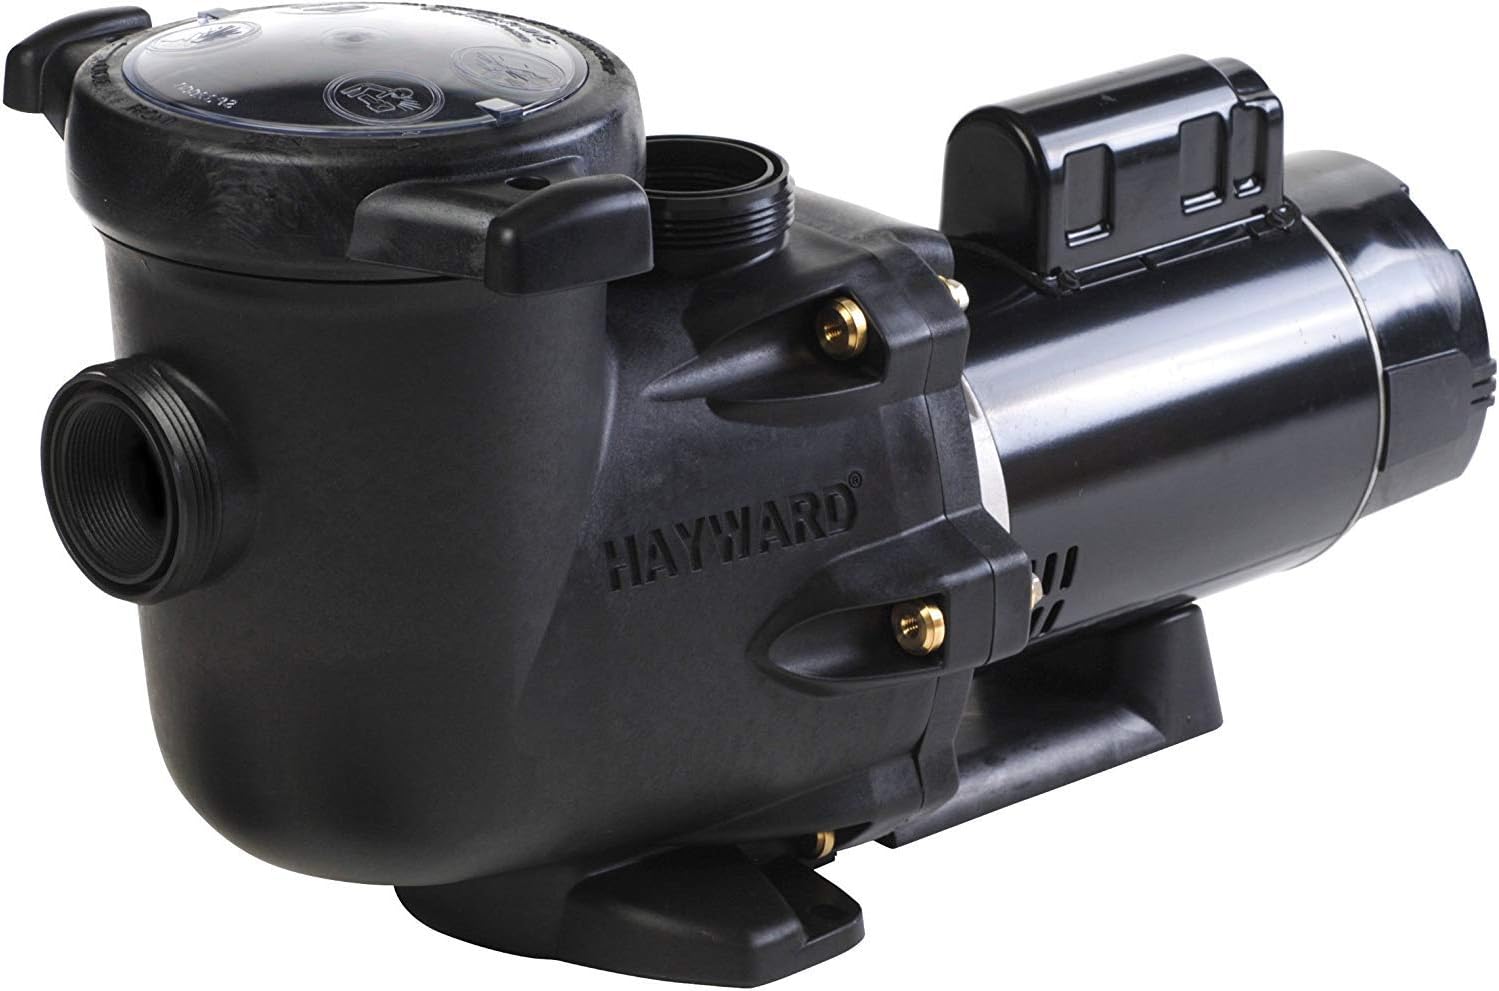 Hayward W3SP3210X15 TriStar Pool Pump, 1.5 HP Max Rate